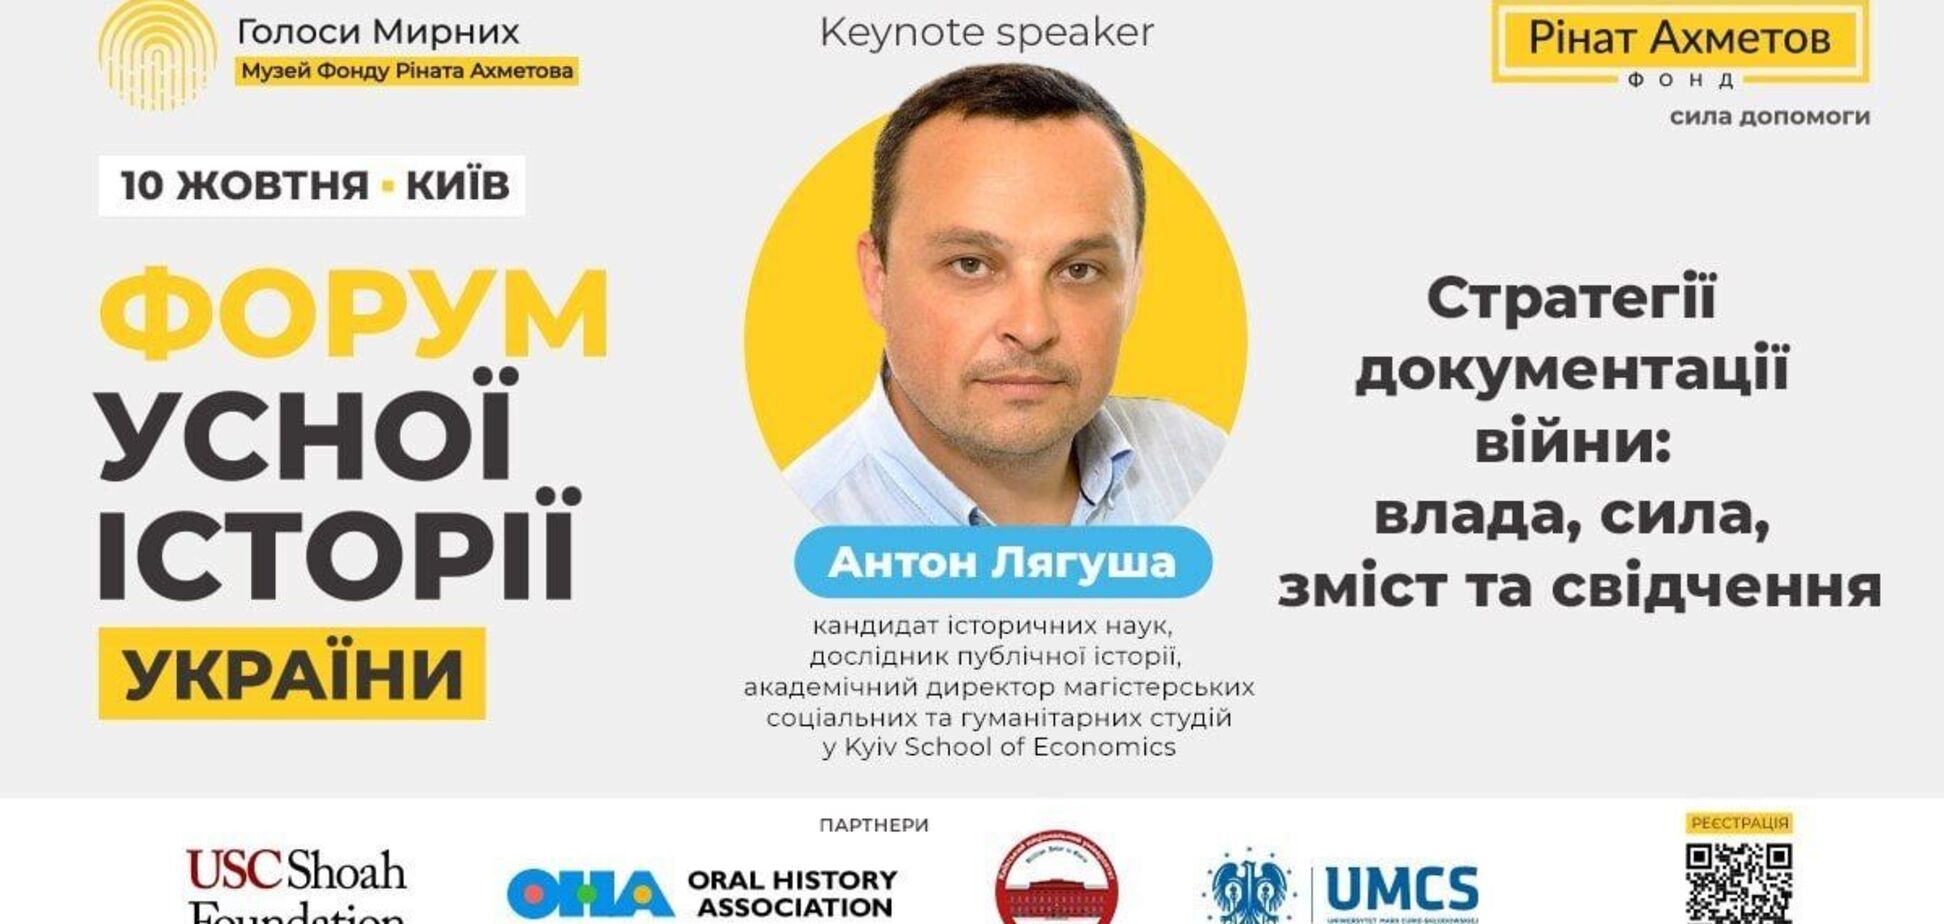 На 'Форуме устной истории Украины' с ключевой речью выступит исследователь публичной истории Антон Лягуша